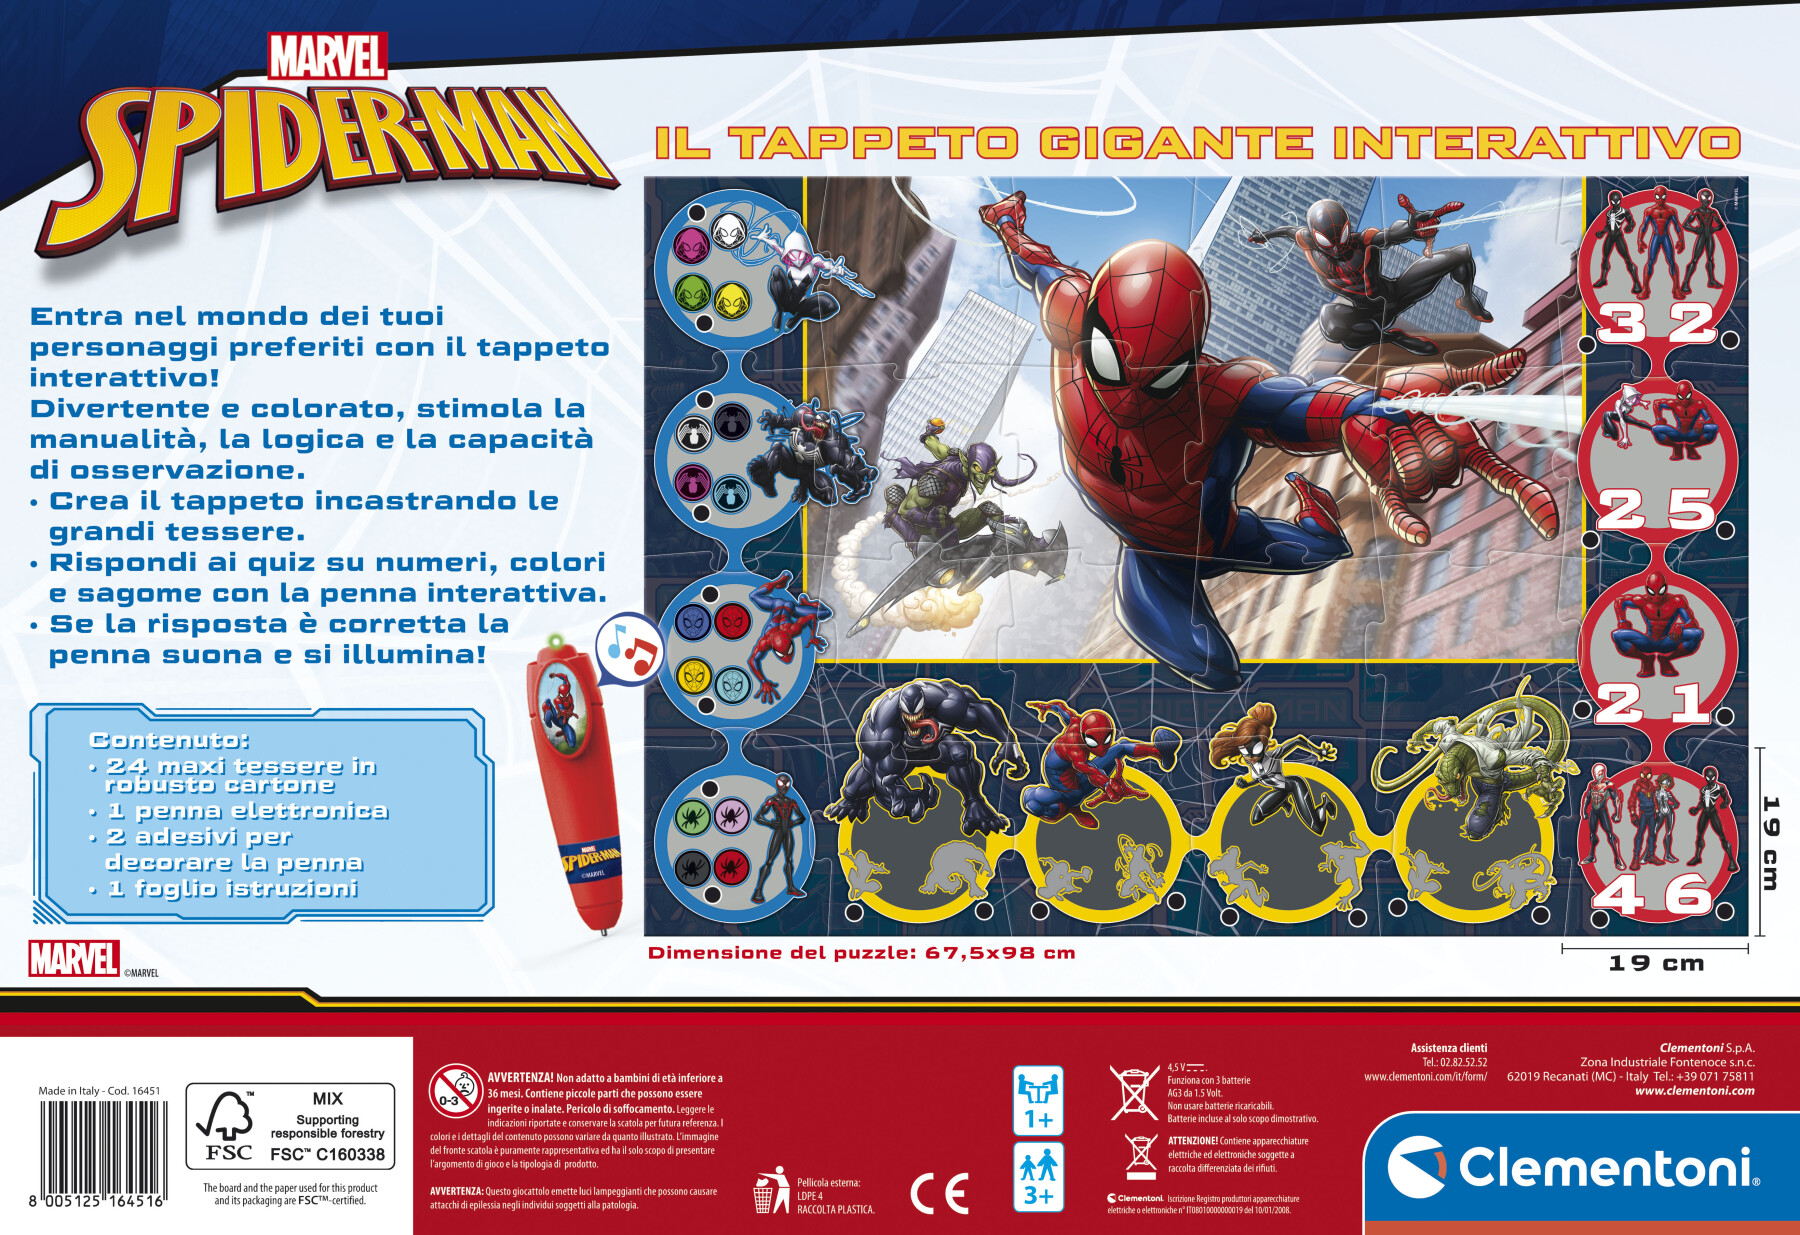 Tappeto gigante interattivo spiderman - CLEMENTONI